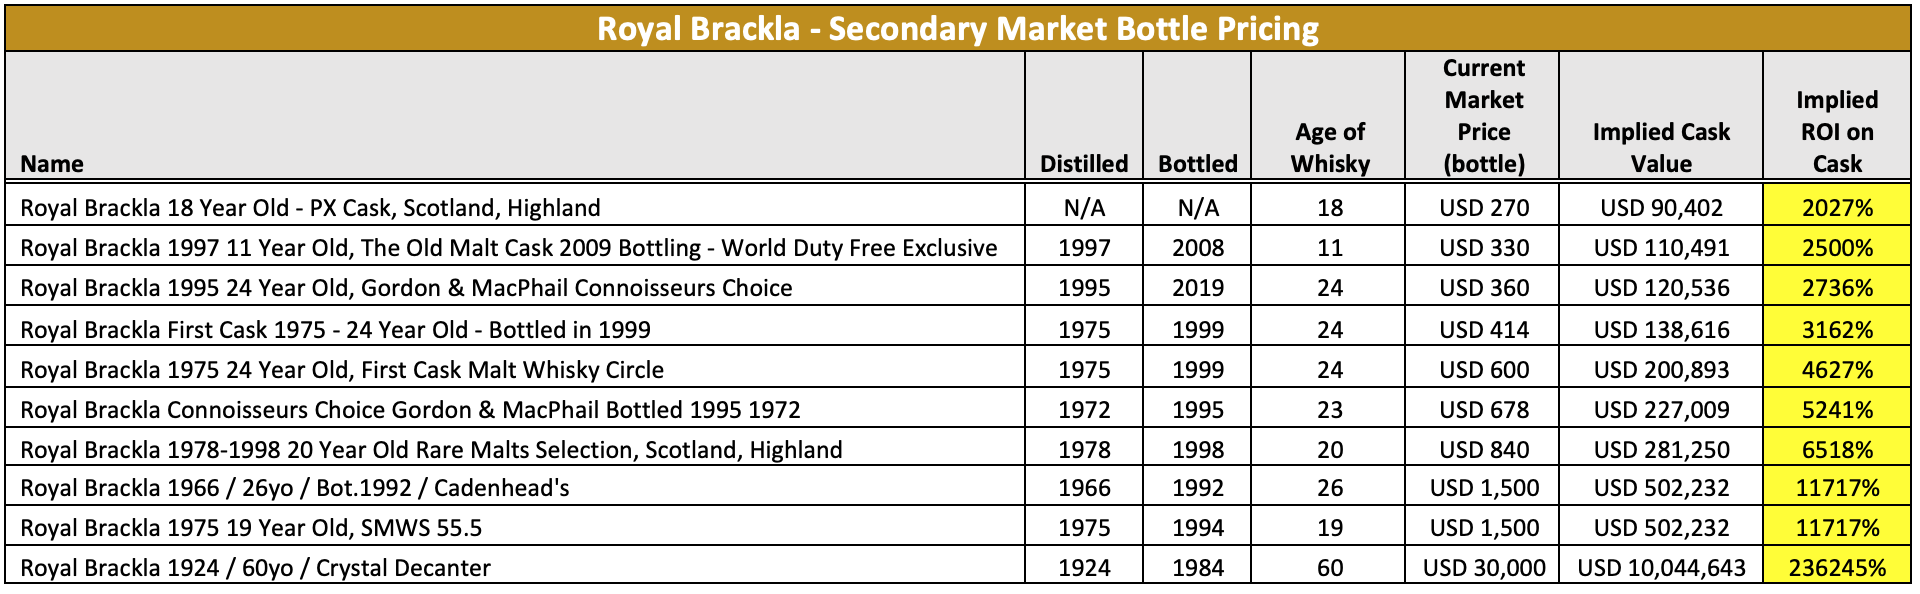 Royal Brackla Secondary Market Bottle Pricing